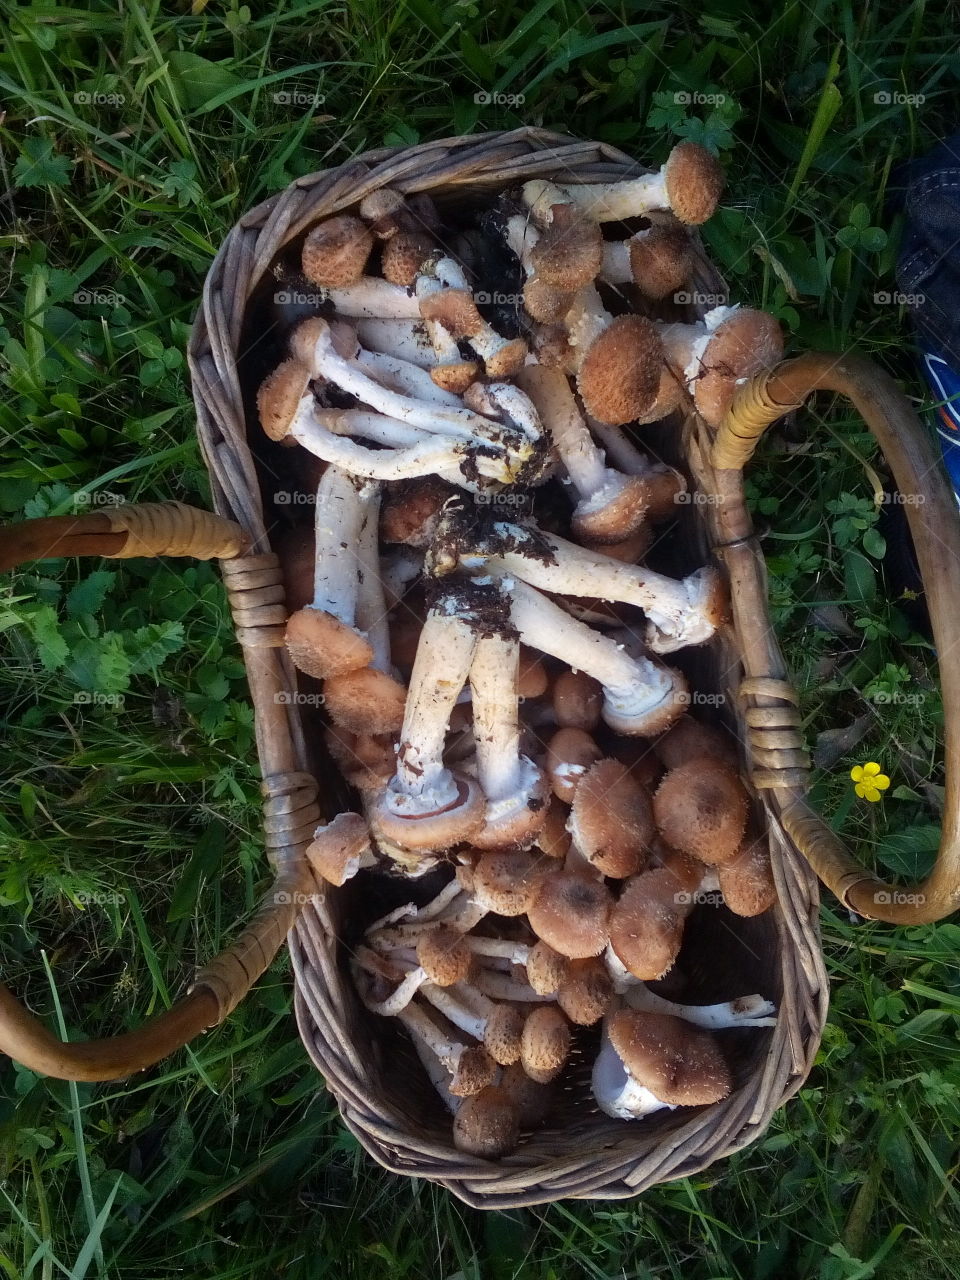 Mushrooms 
